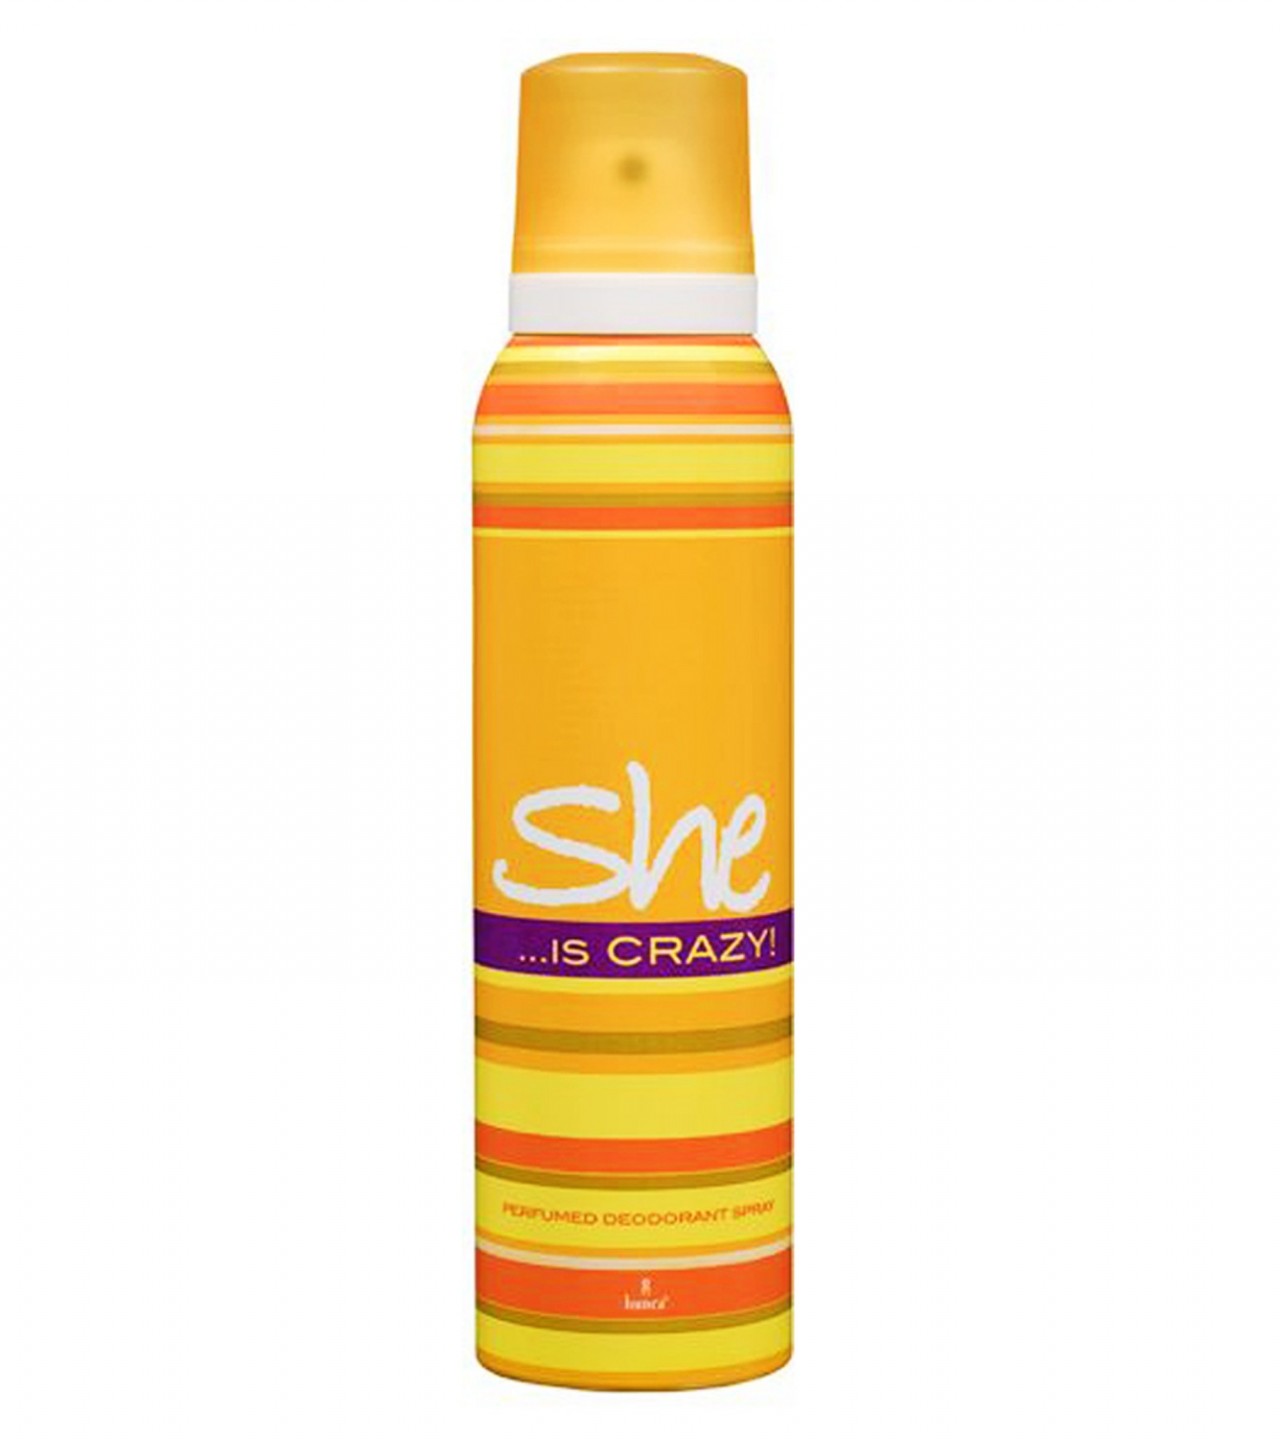 She is Crazy Body Spray Deodorant - Yellow - 200 ml